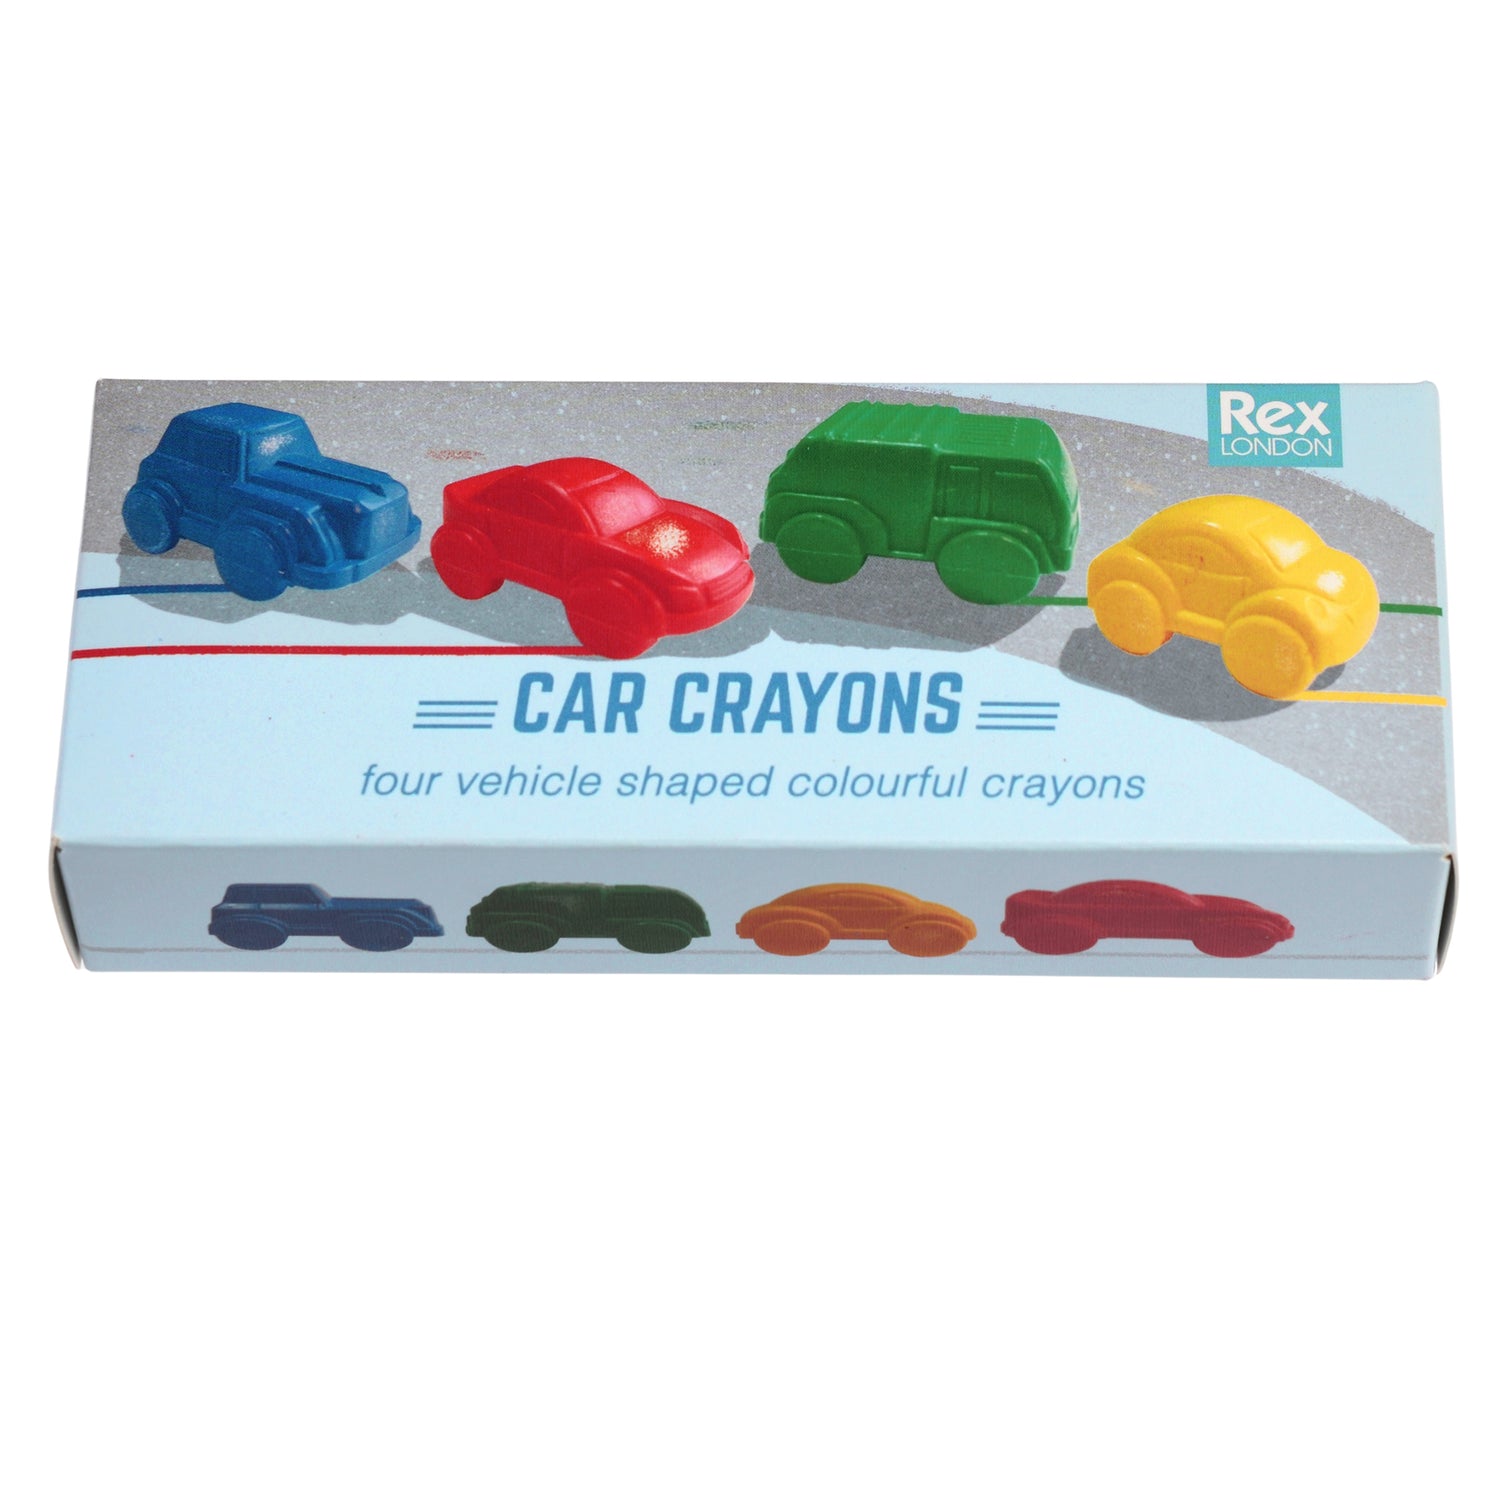 Car Crayons